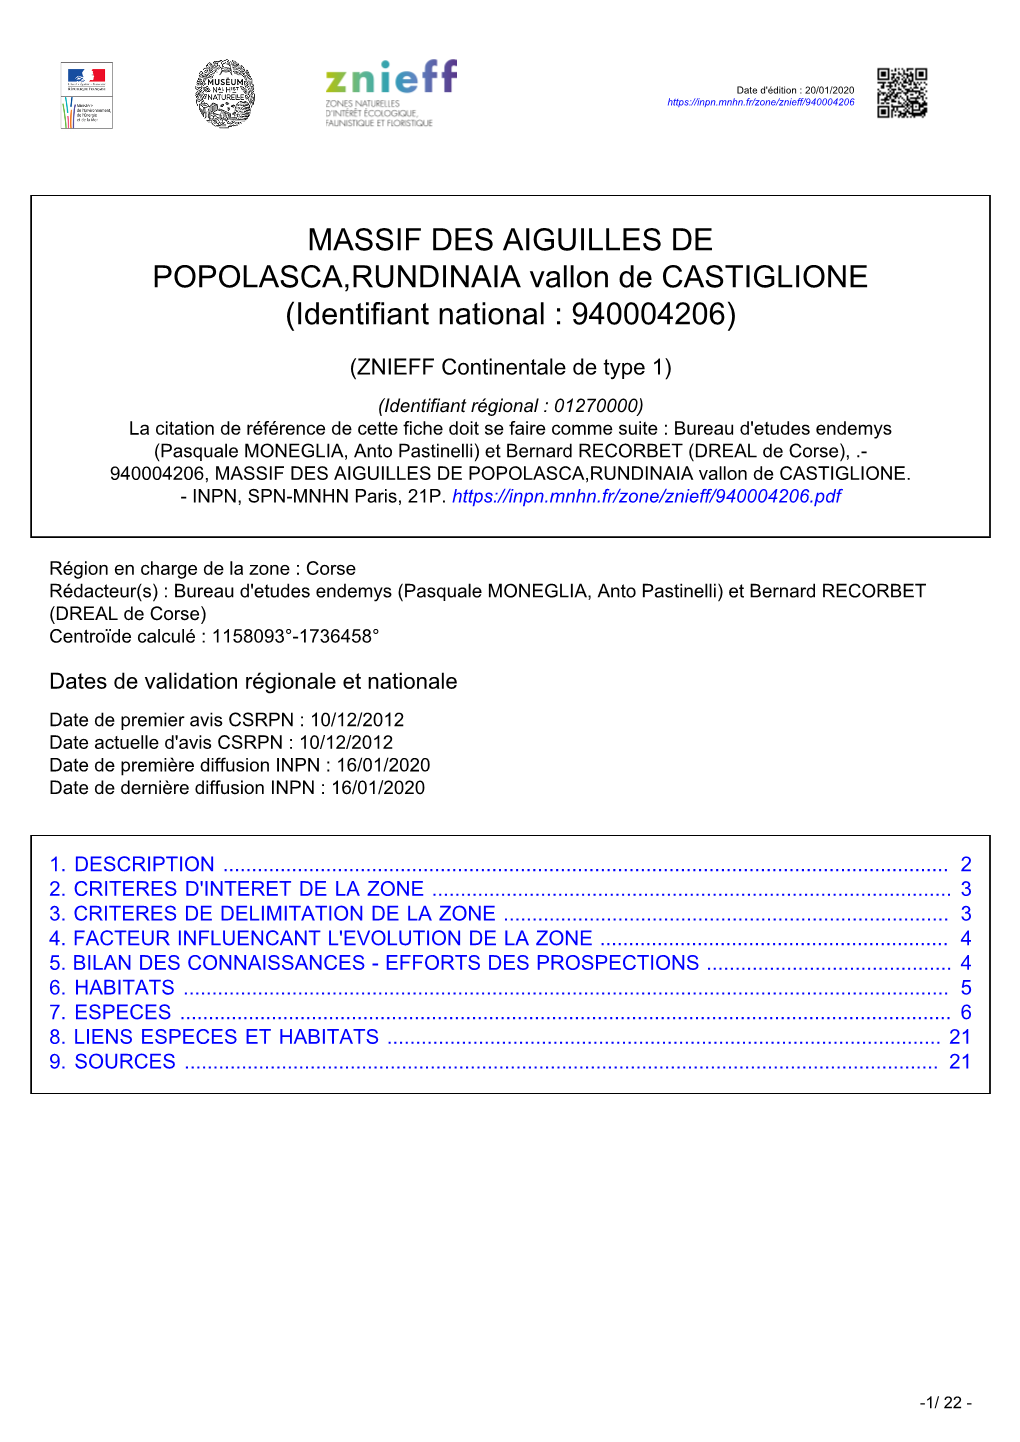 MASSIF DES AIGUILLES DE POPOLASCA,RUNDINAIA Vallon De CASTIGLIONE (Identifiant National : 940004206)